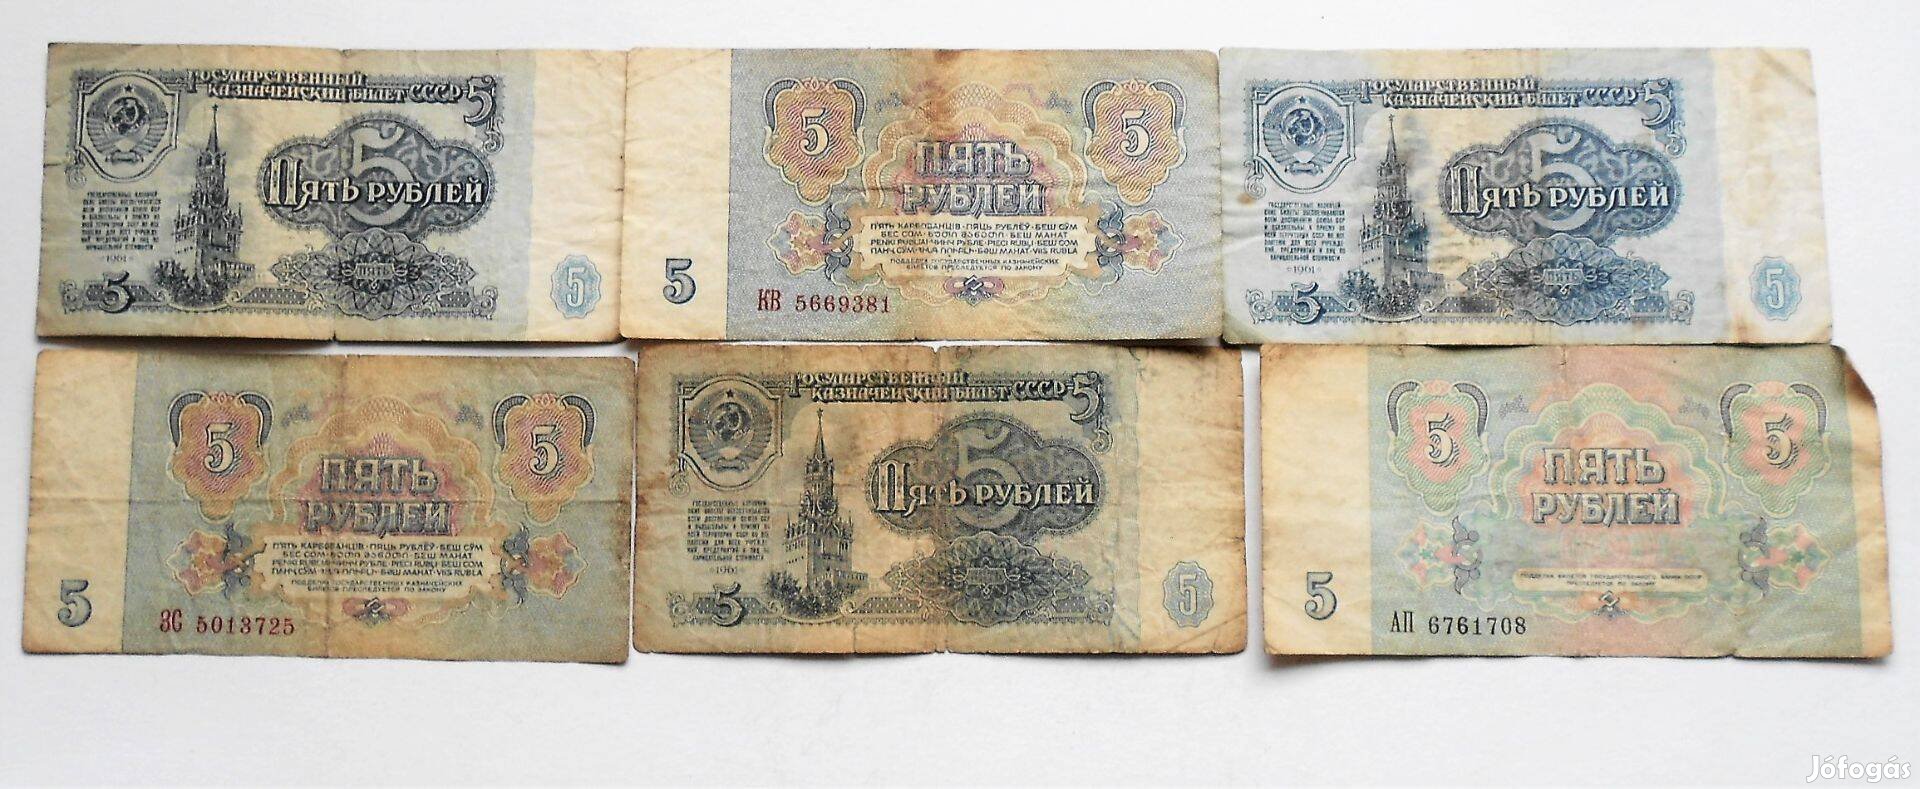 5 Rubel papírpénz Szovjetunió